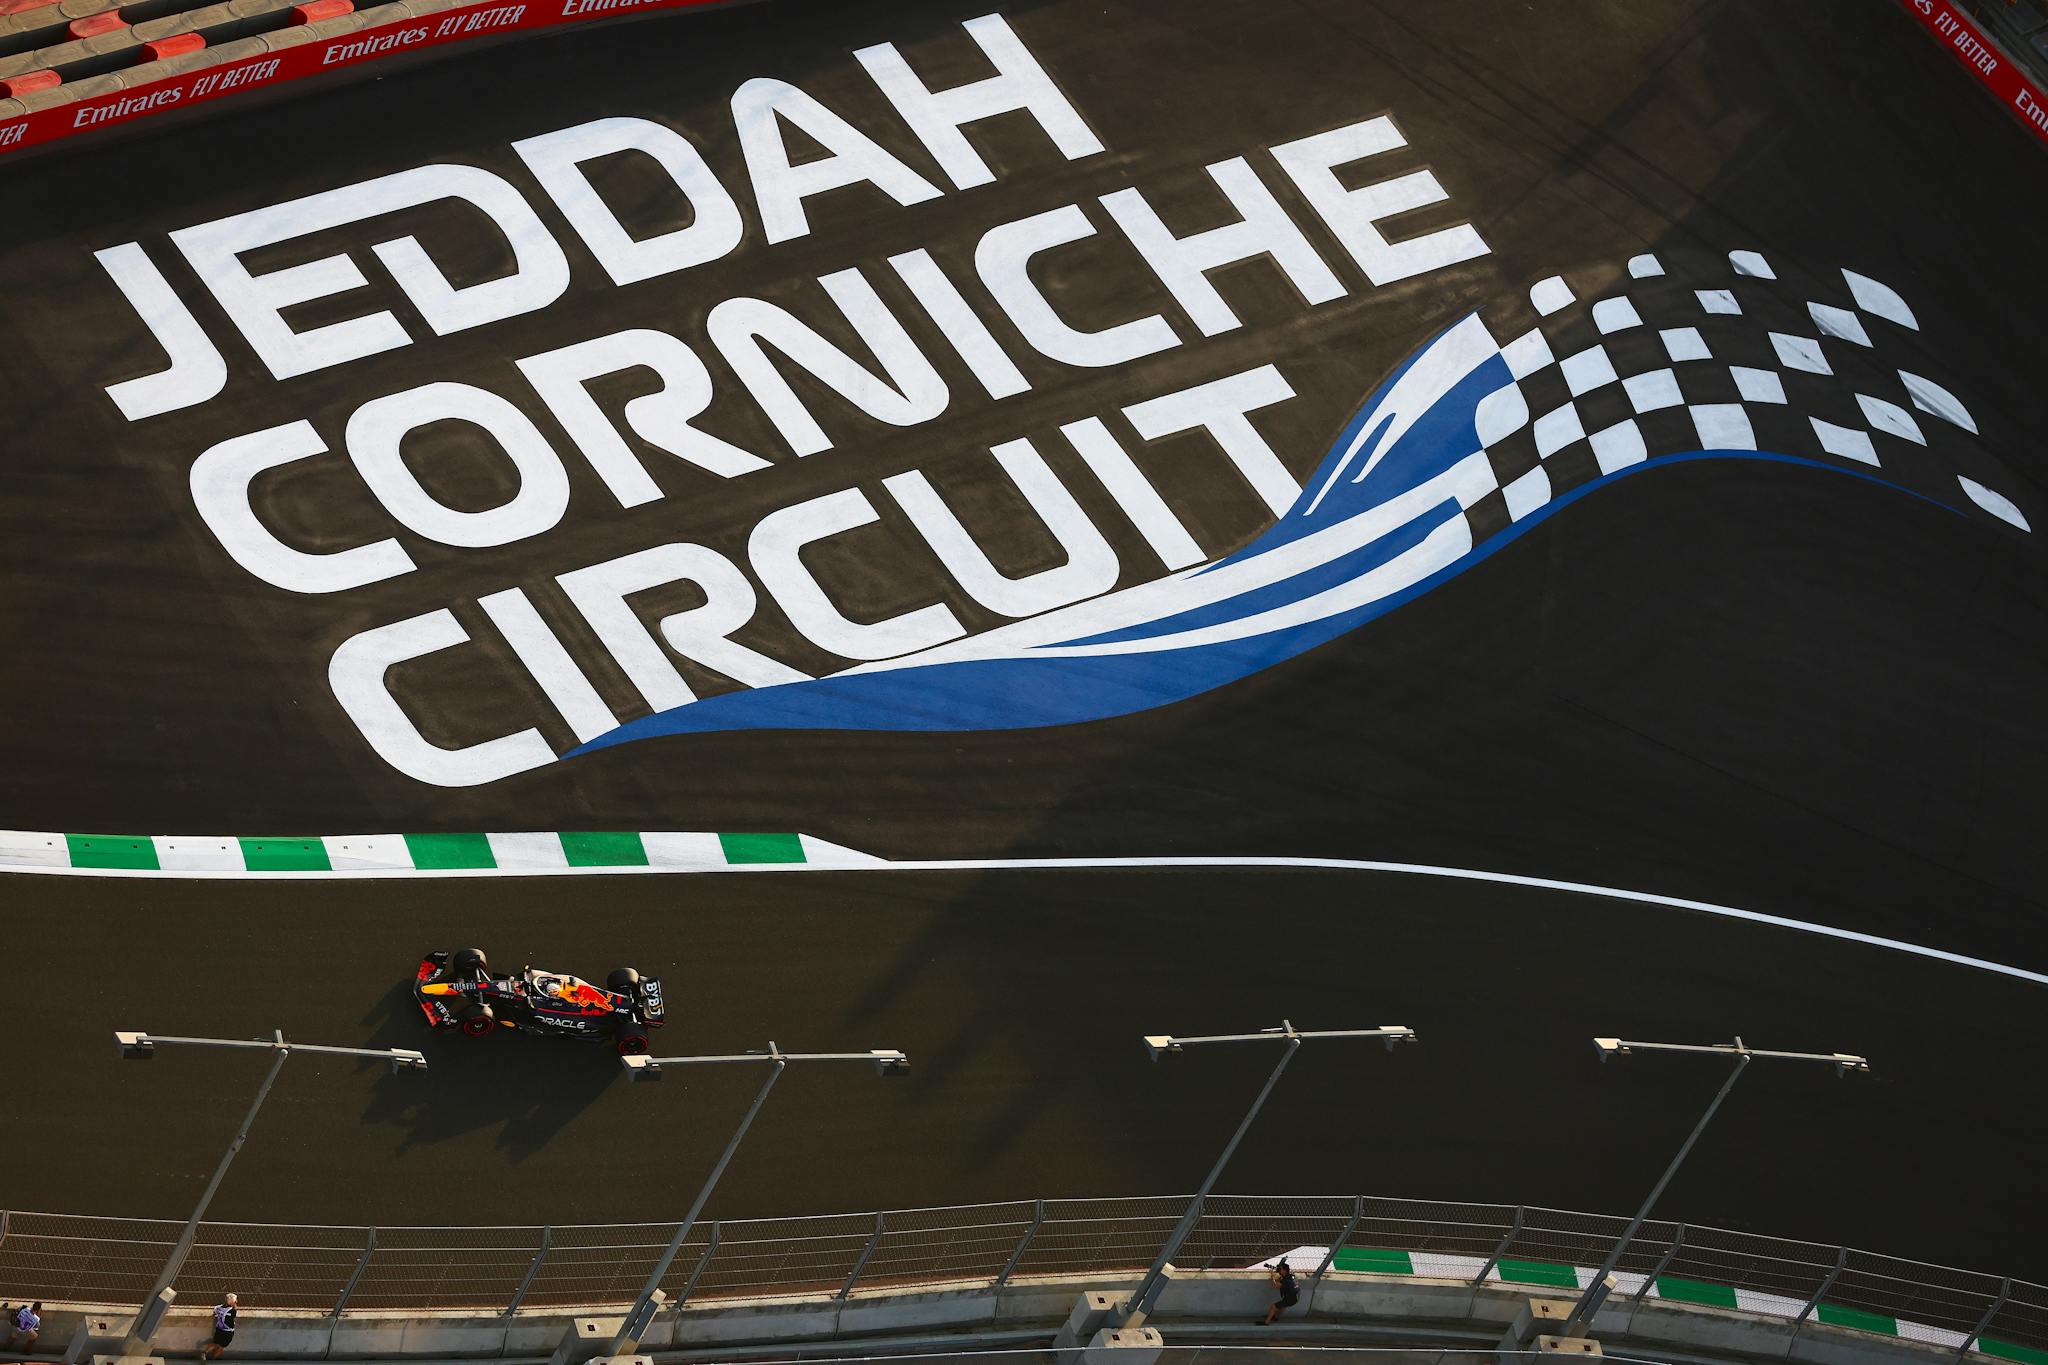 Zespoły spodziewają się rozmów o przyszłości Arabii Saudyjskiej w F1